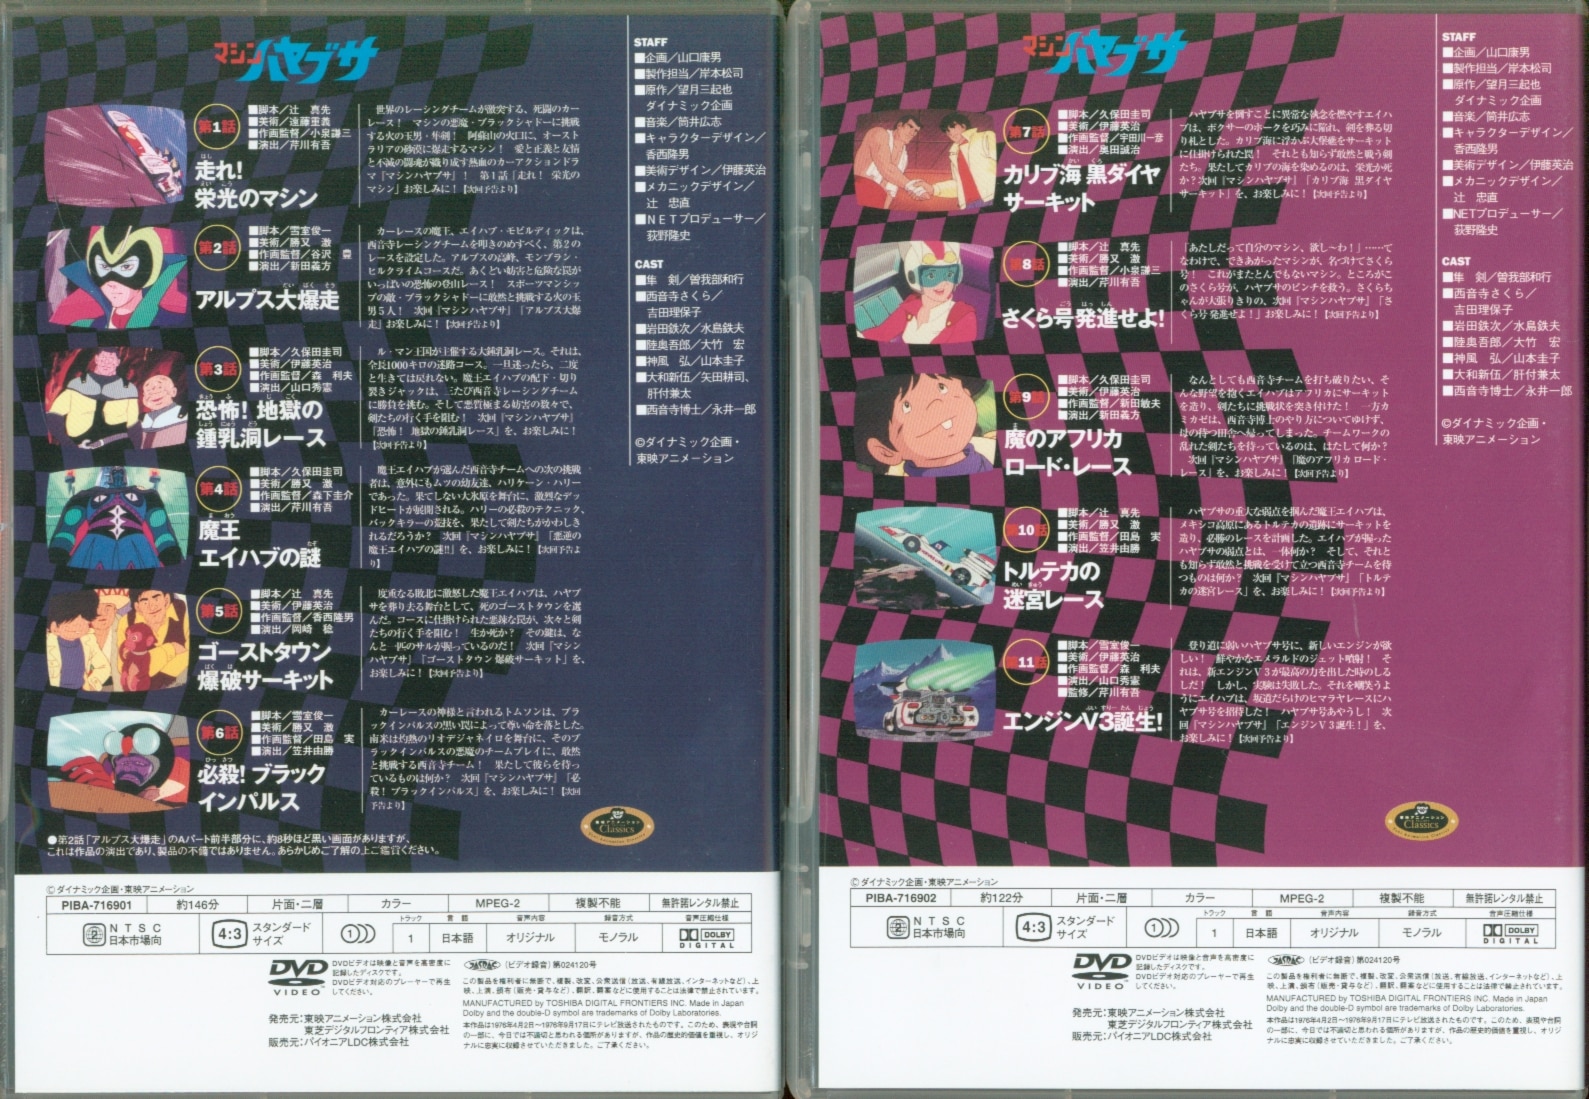 望月三起也先生追悼企画 第2弾 マシンハヤブサ DVD-BOX デジタルリ 